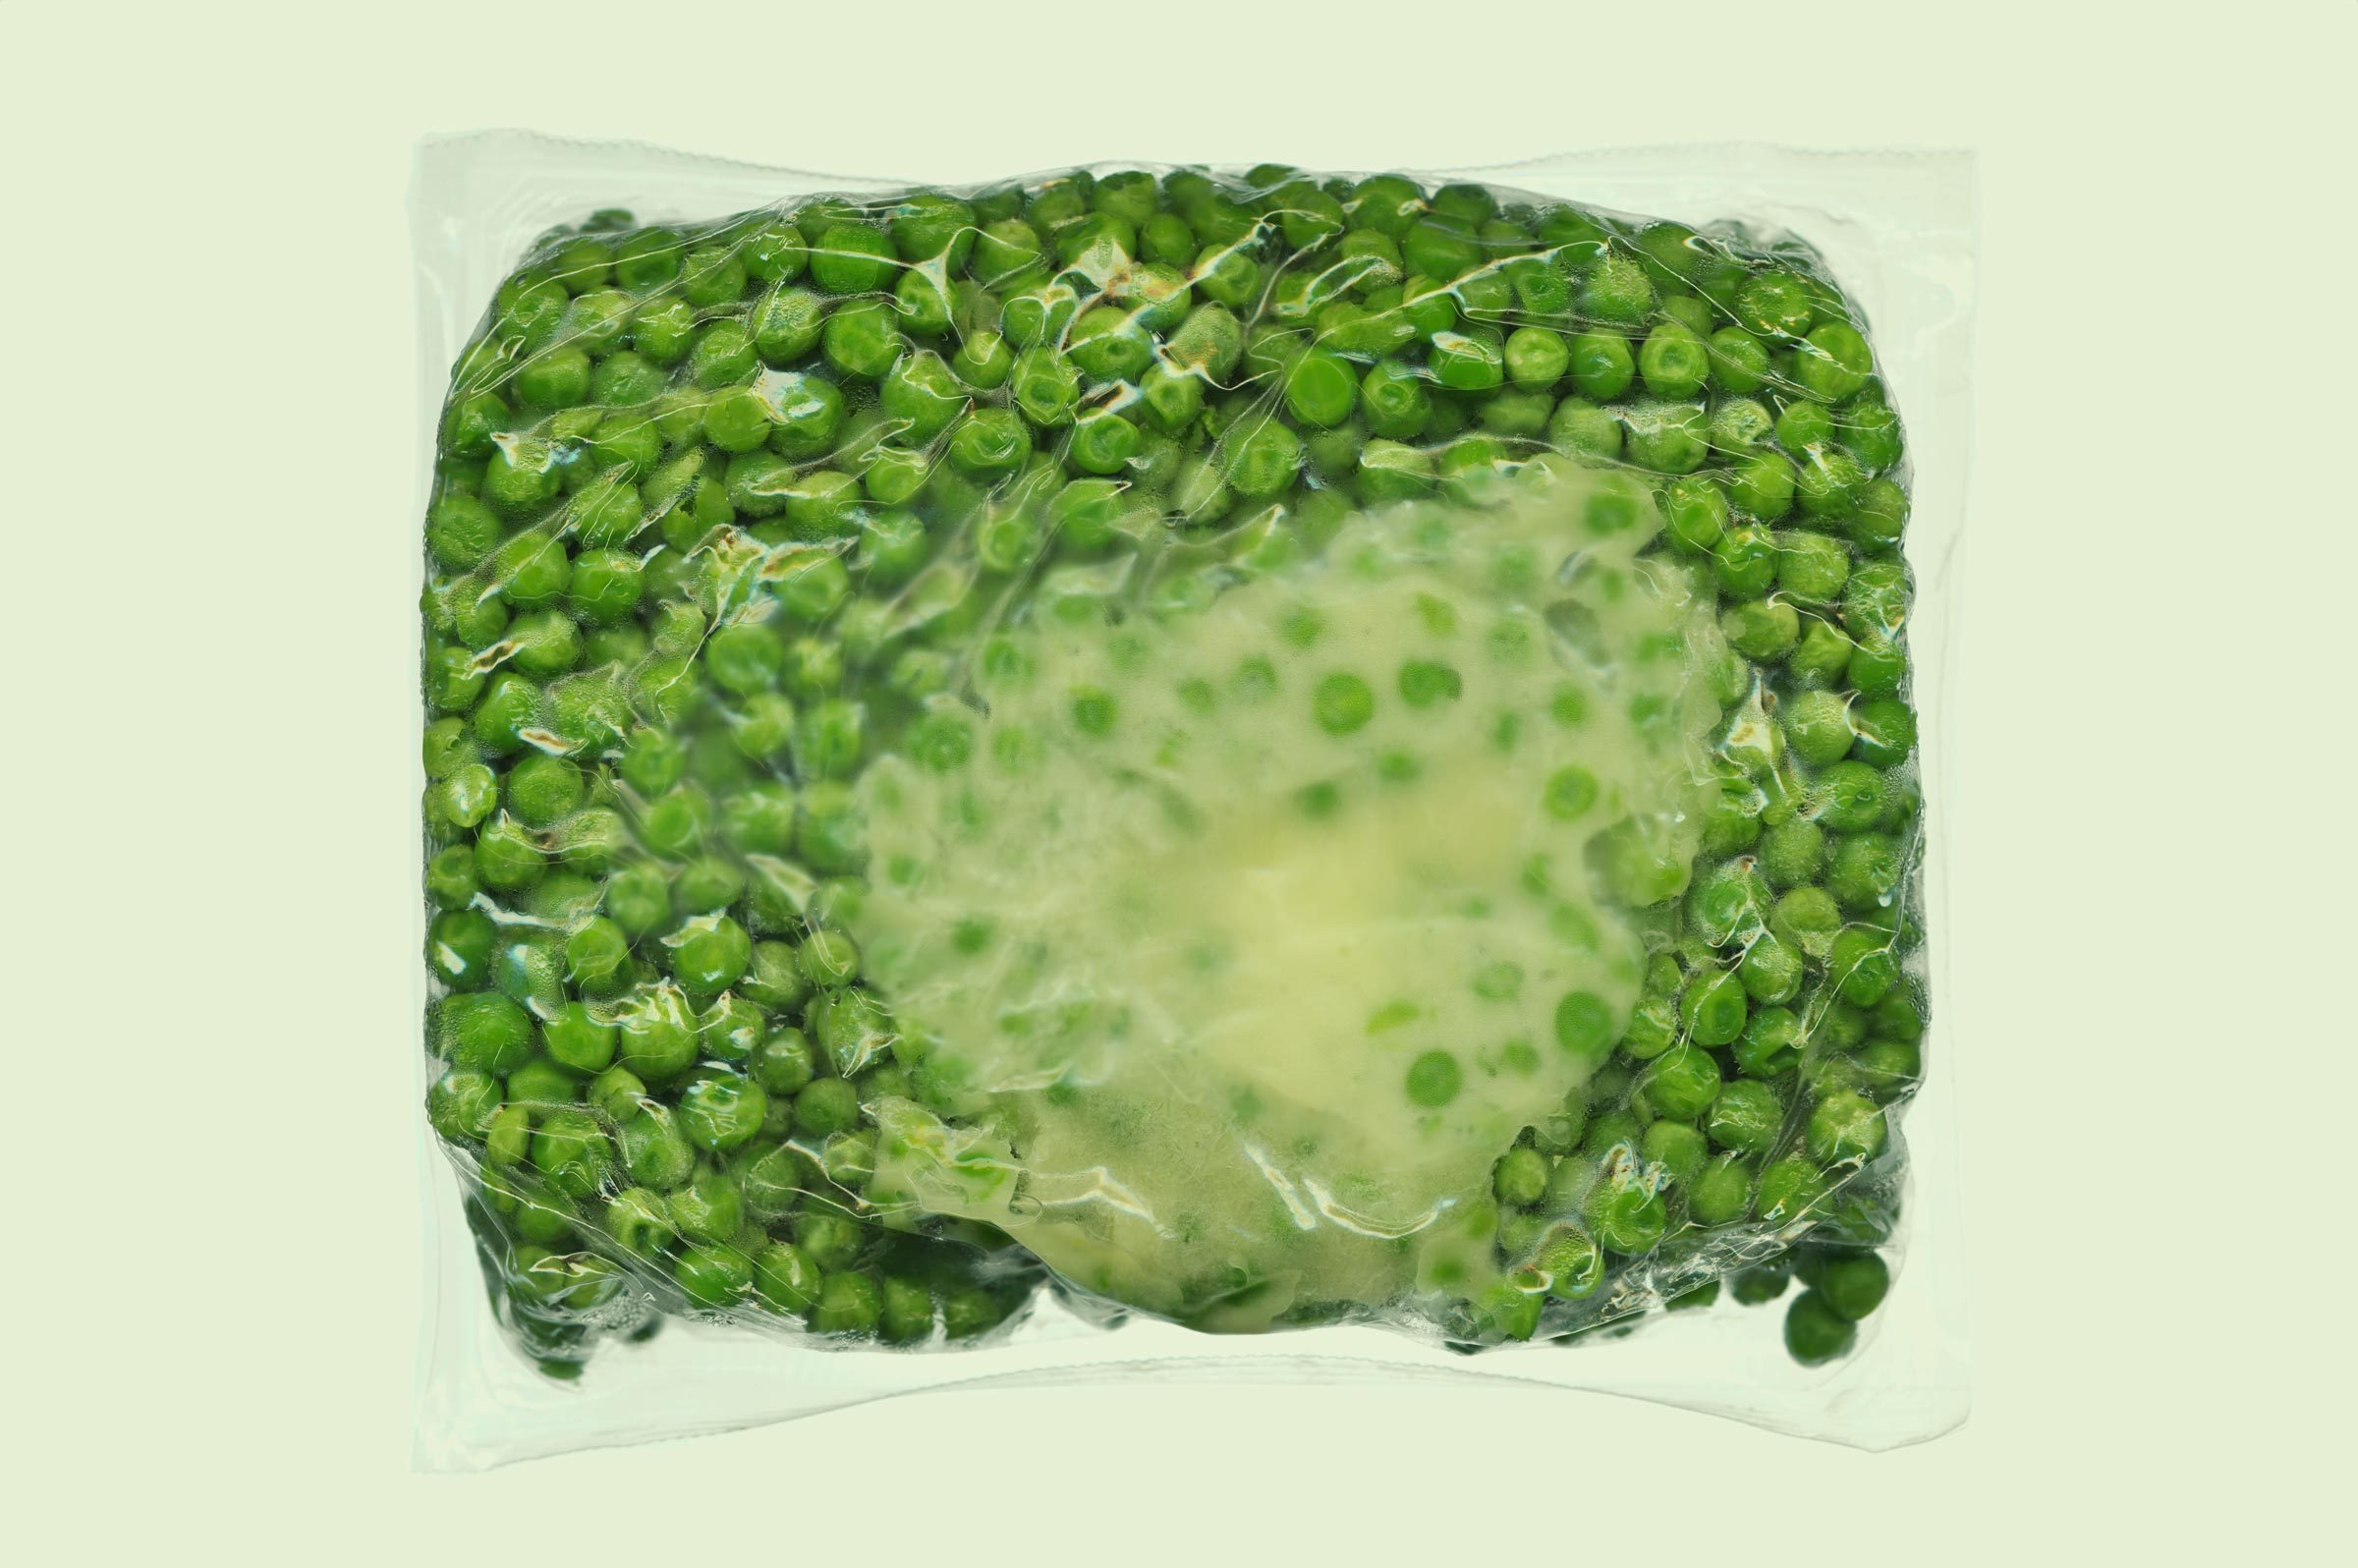 Gettyimages 200517406 001 Frozen Peas In Plastic Jvedit